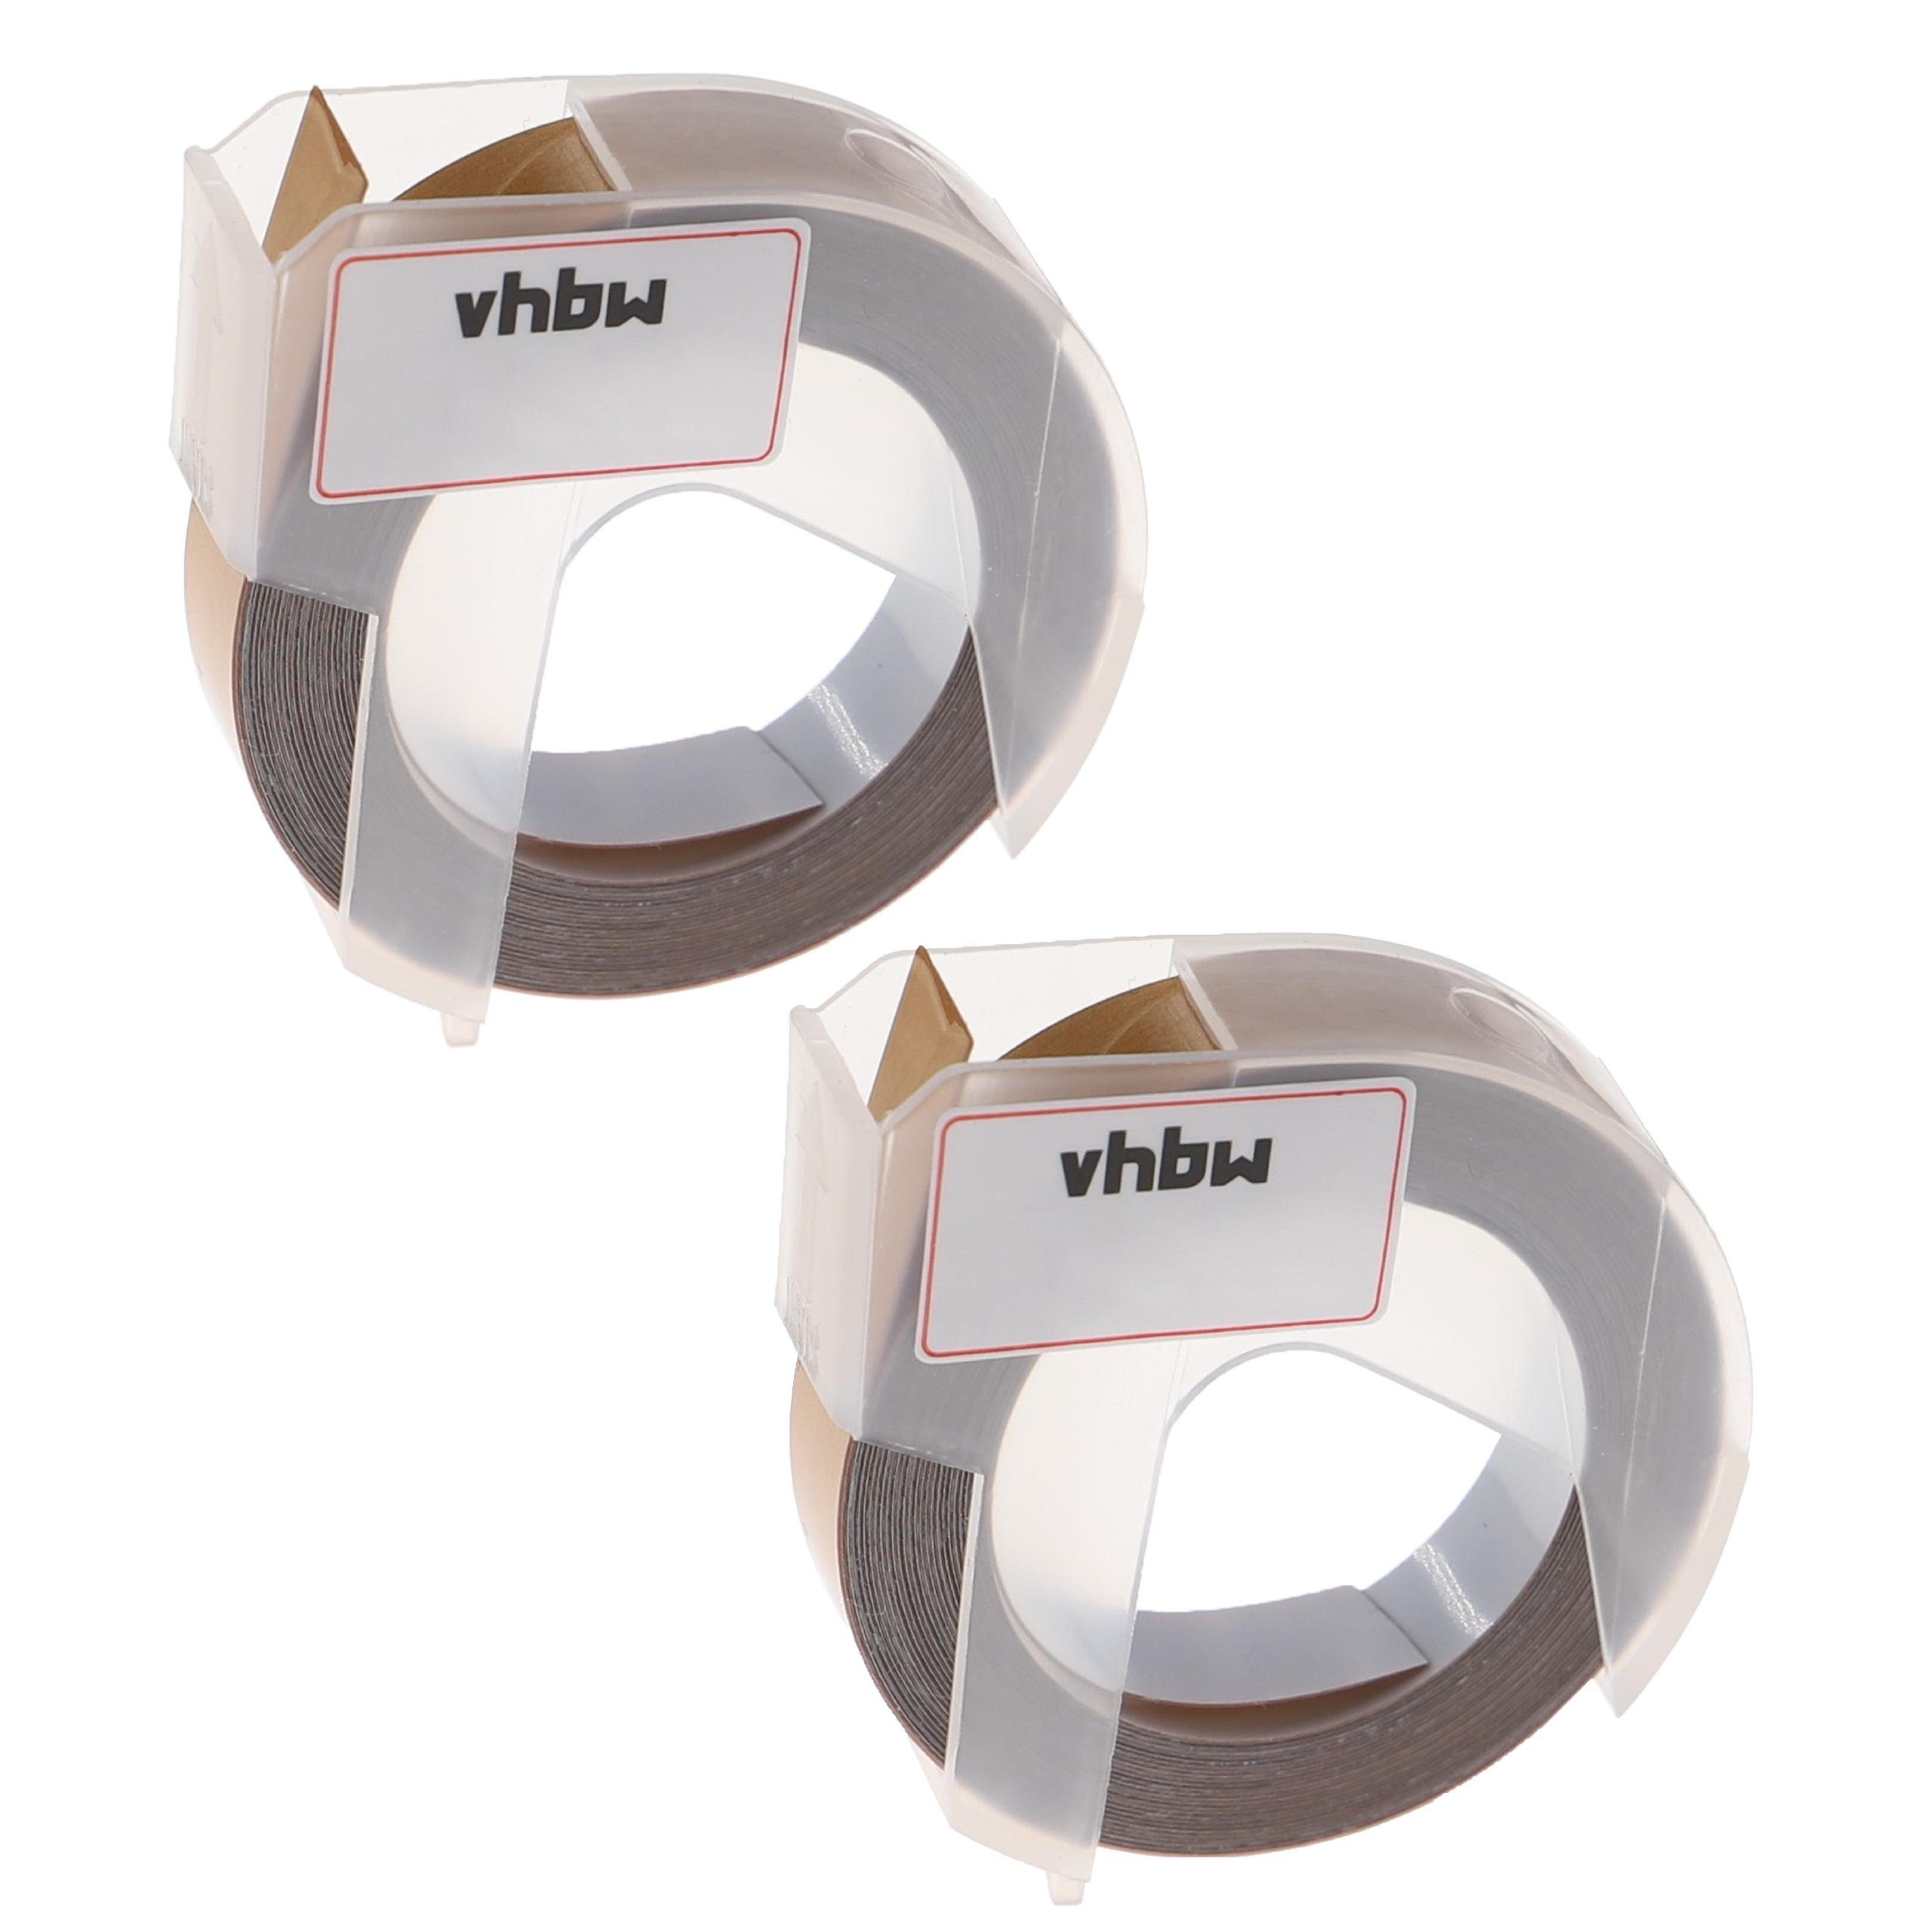 vhbw Beschriftungsband passend für Motex 5500A, 5500B Beschriftungsgerät / Drucker & Kopierer